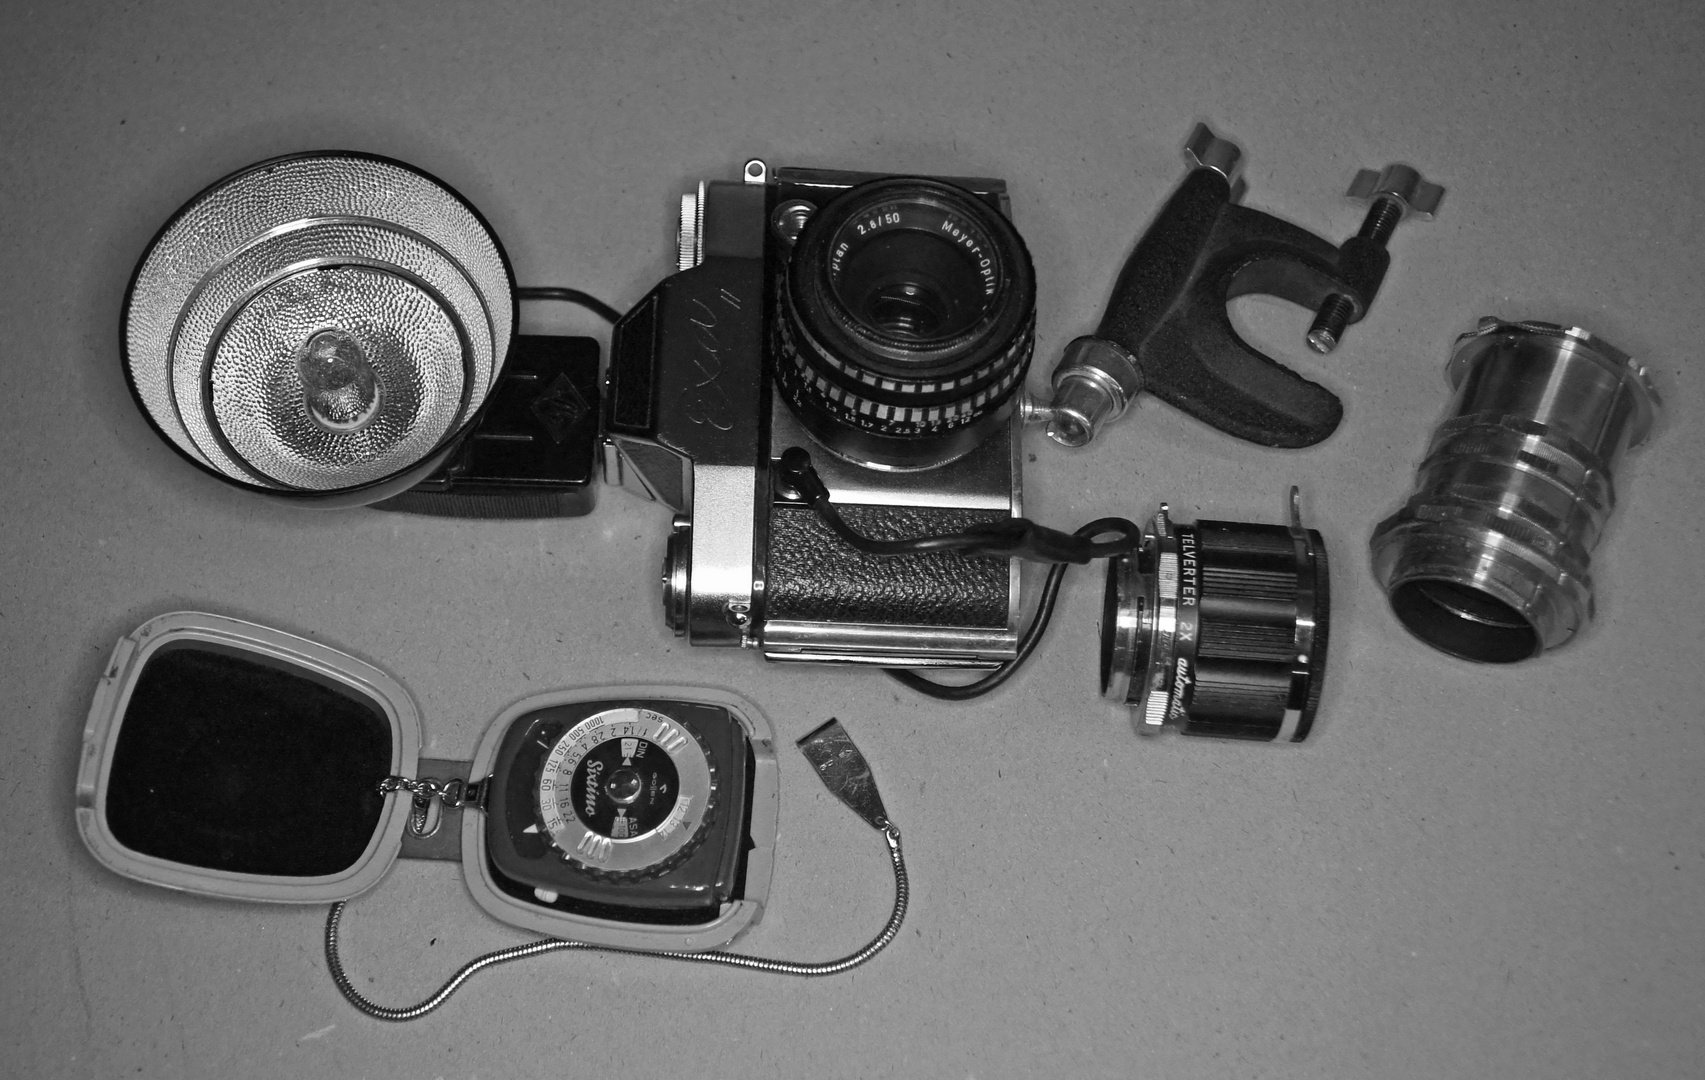 EXA 2 Anno dazumal Baujahr 1960 die 1te Spiegelreflex Kamera meines Vaters